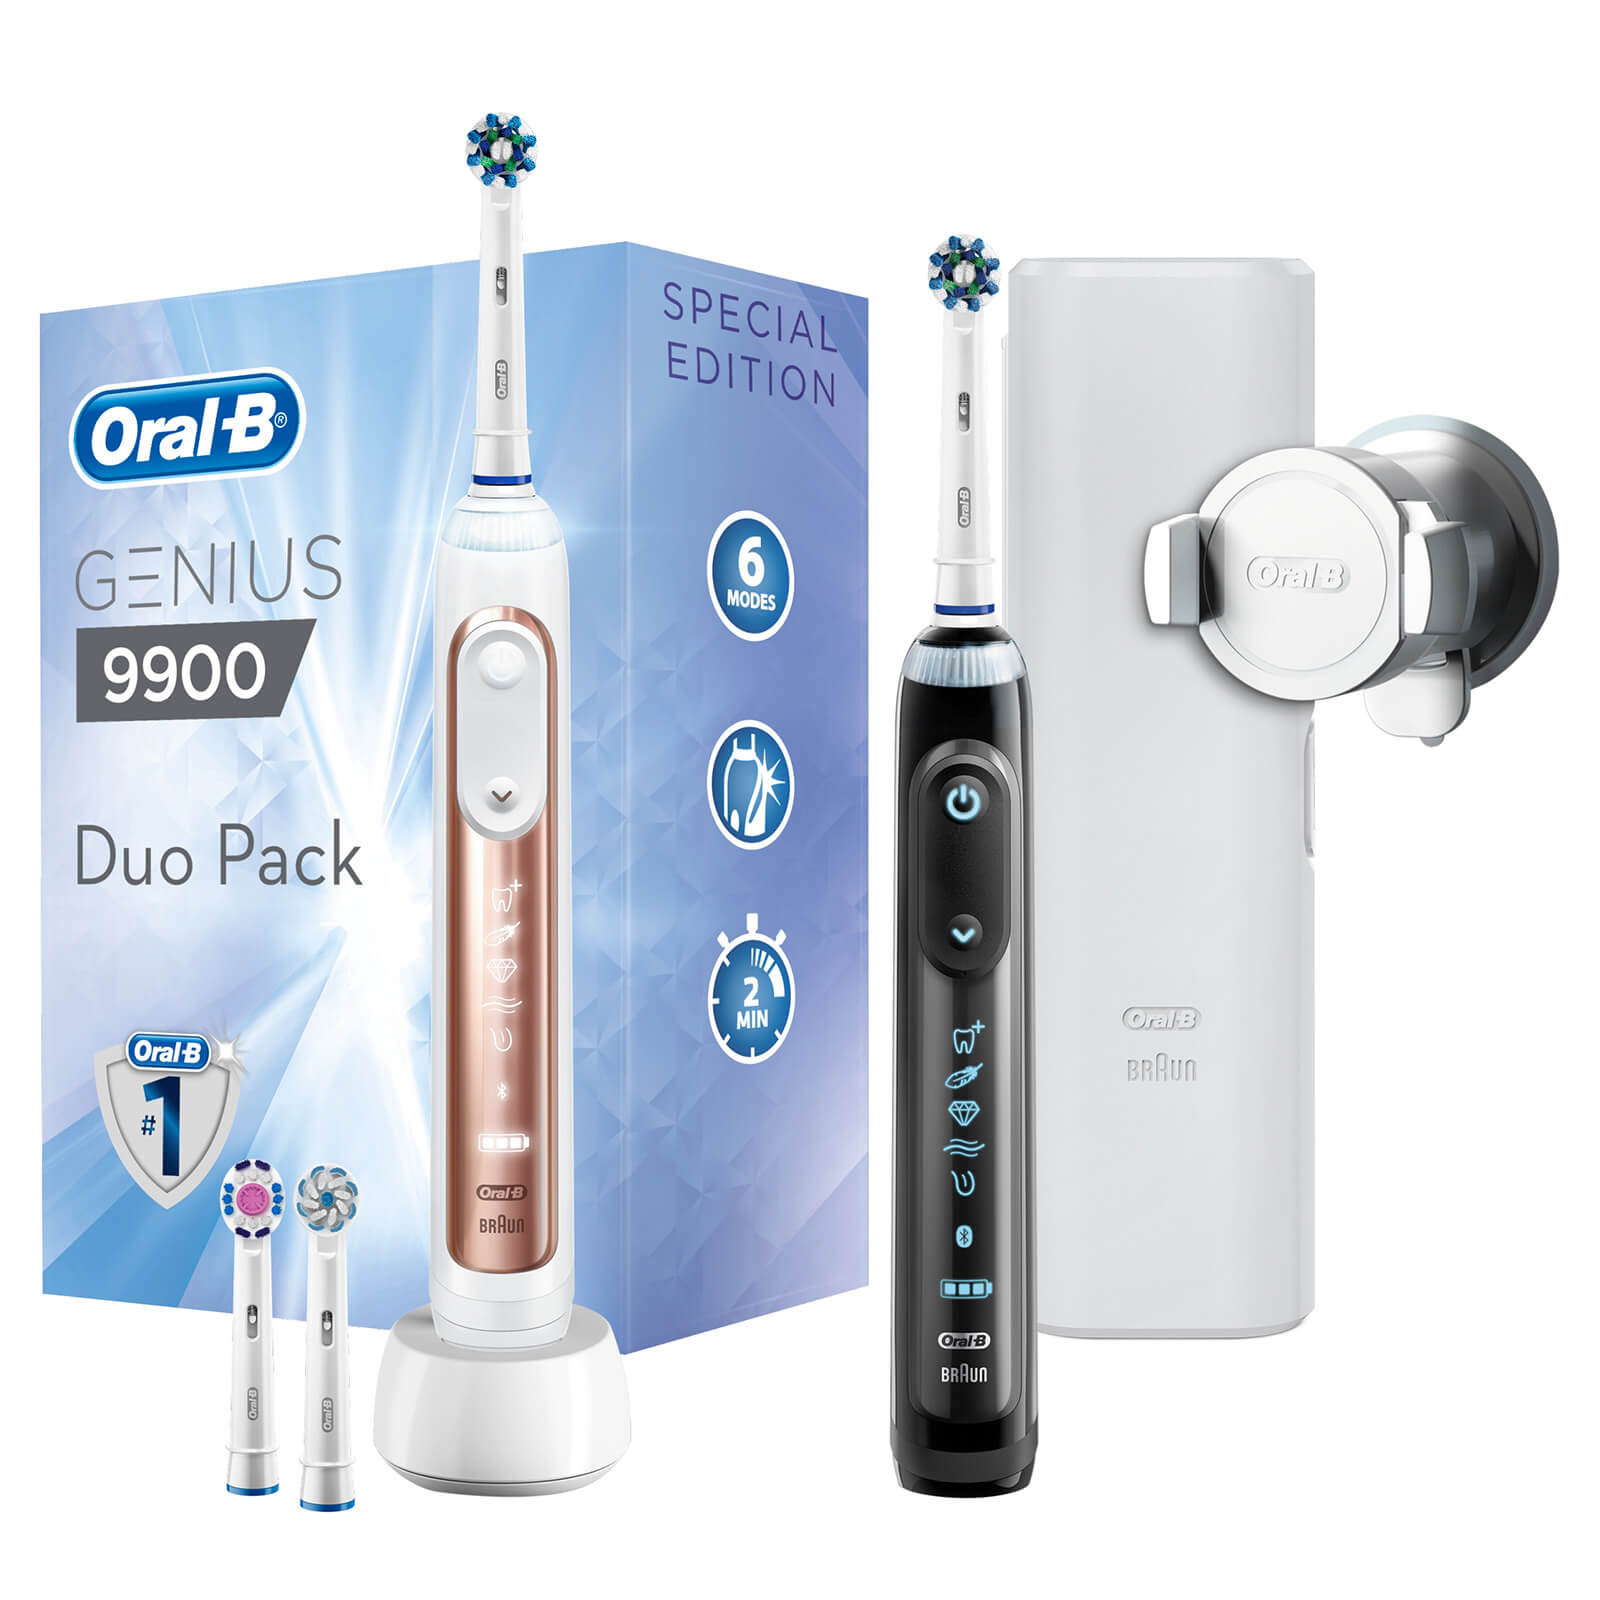 Oral-B Genius 9900 Electric Toothbrush (2 Pack) lookfantastic.com imagine